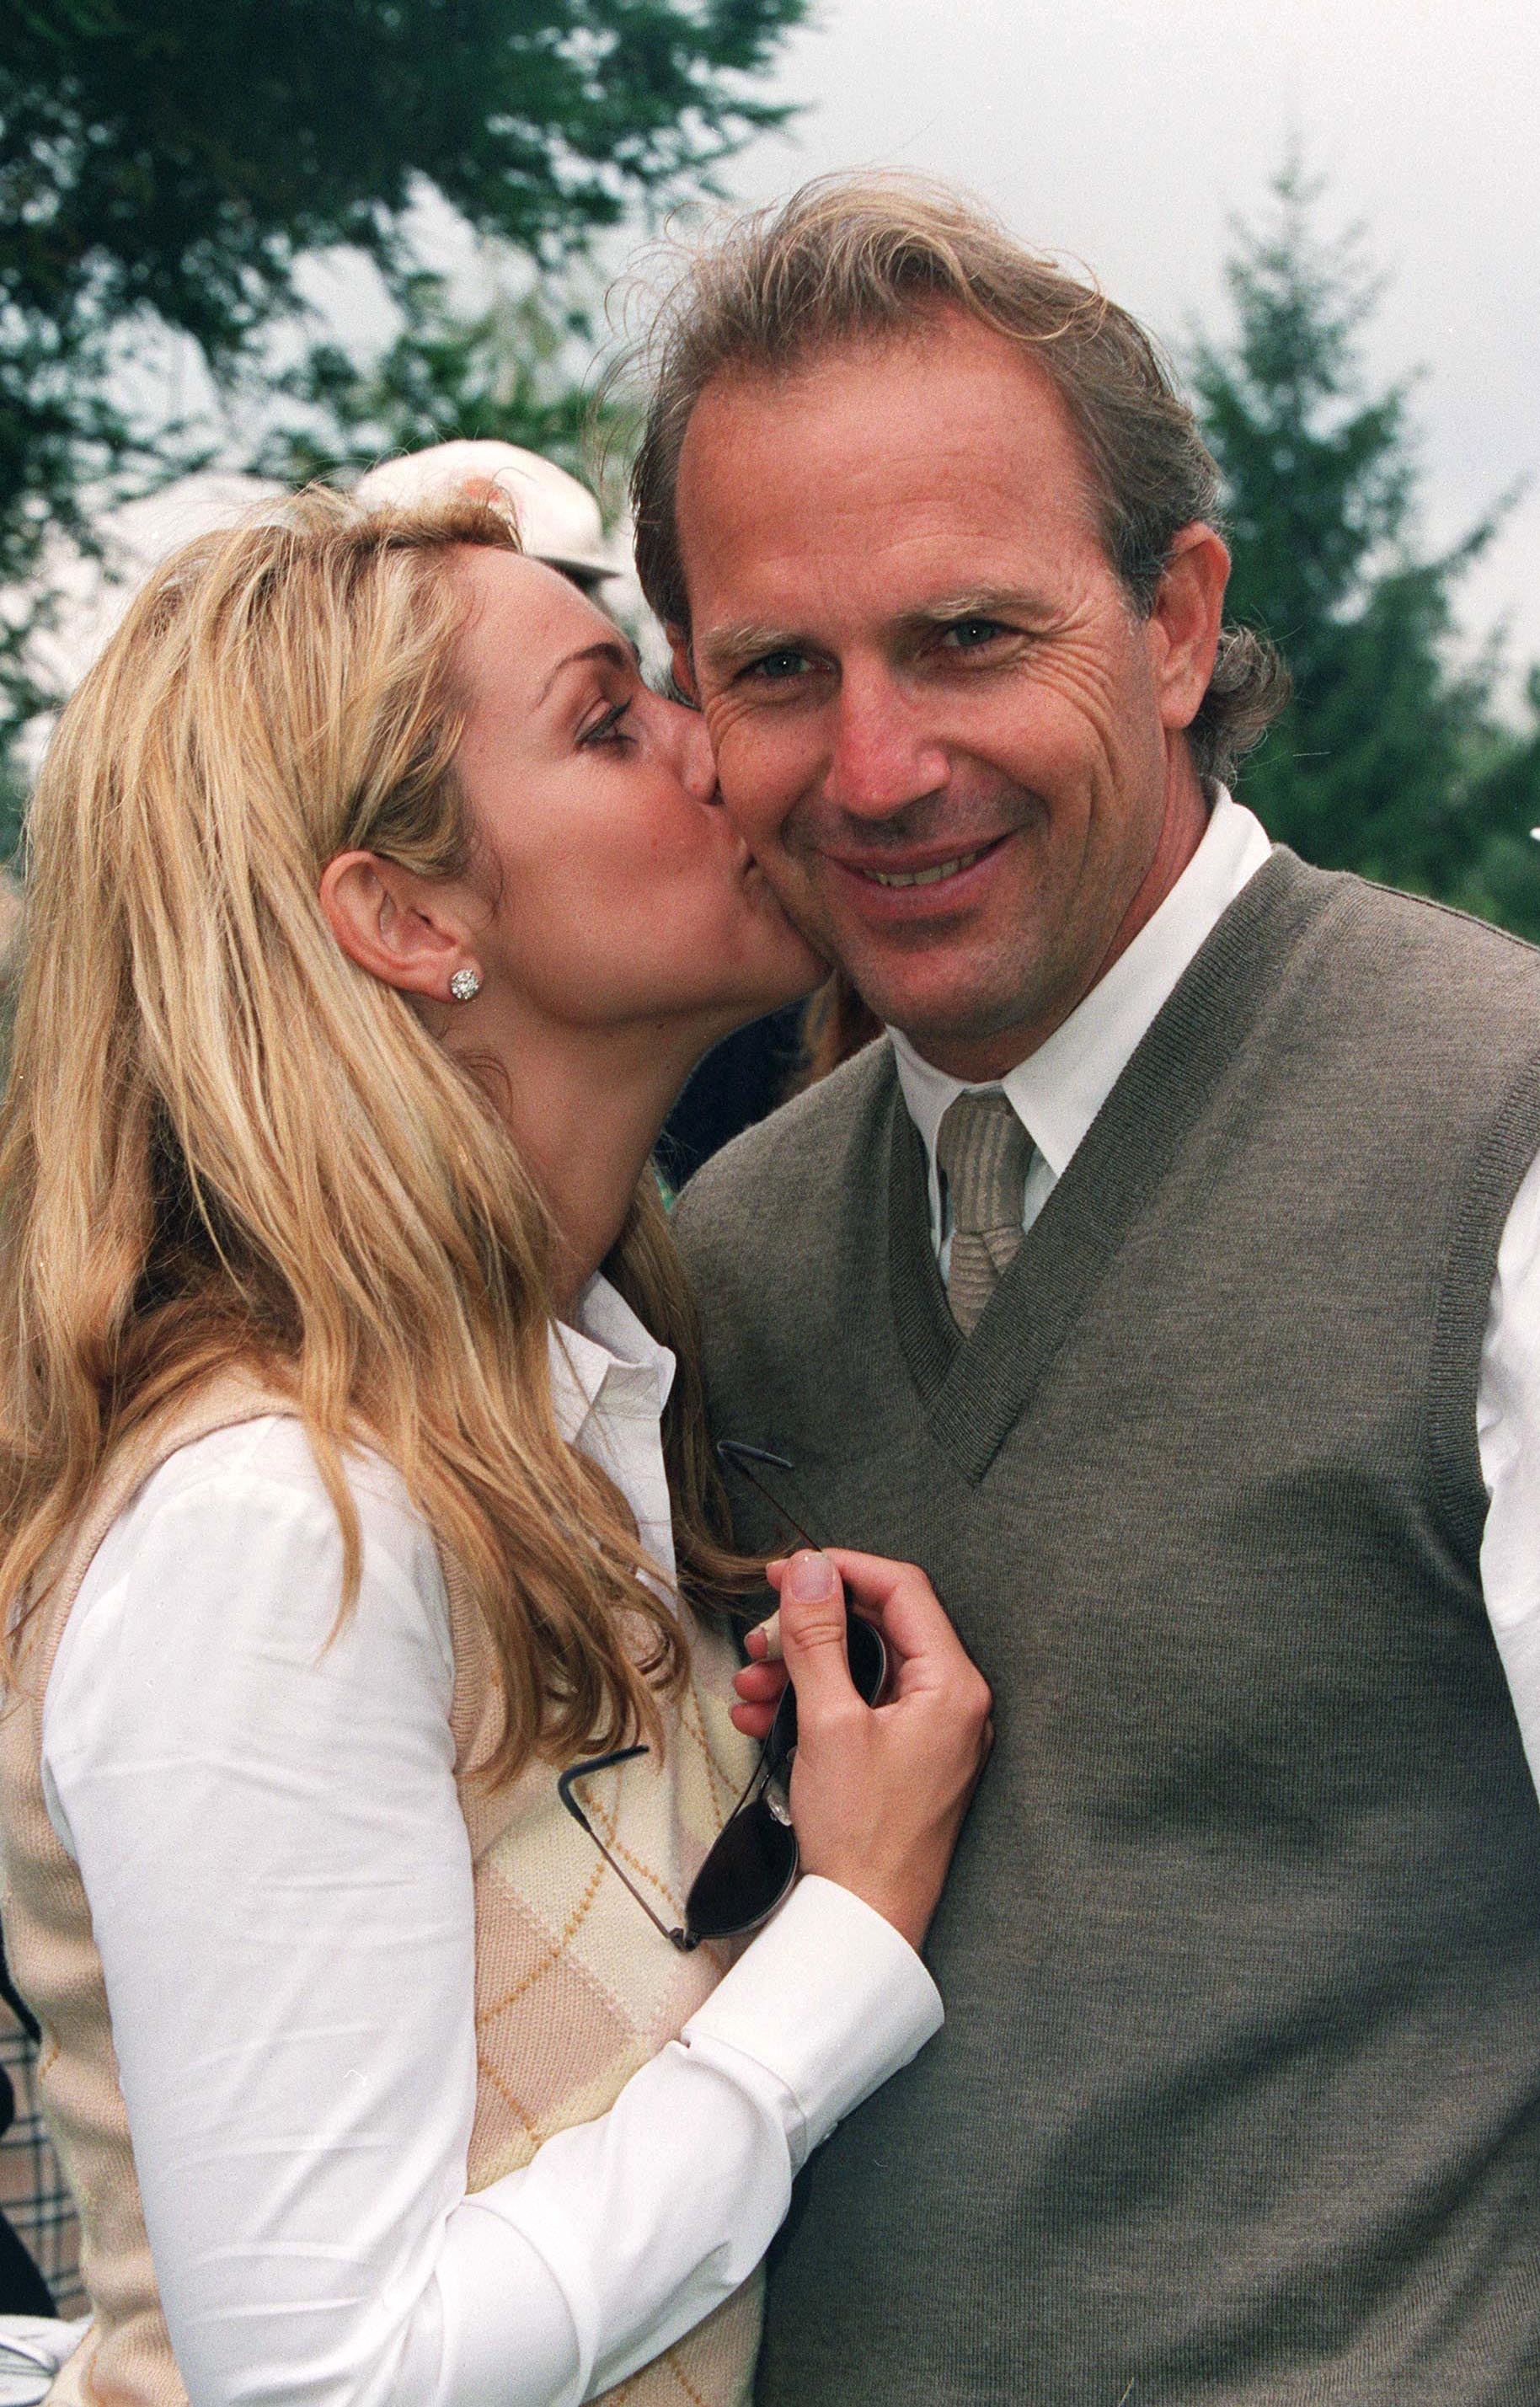 Christine Baumgarten et Kevin Costner à Monaco le 10 juin 2000 | Source : Getty Images